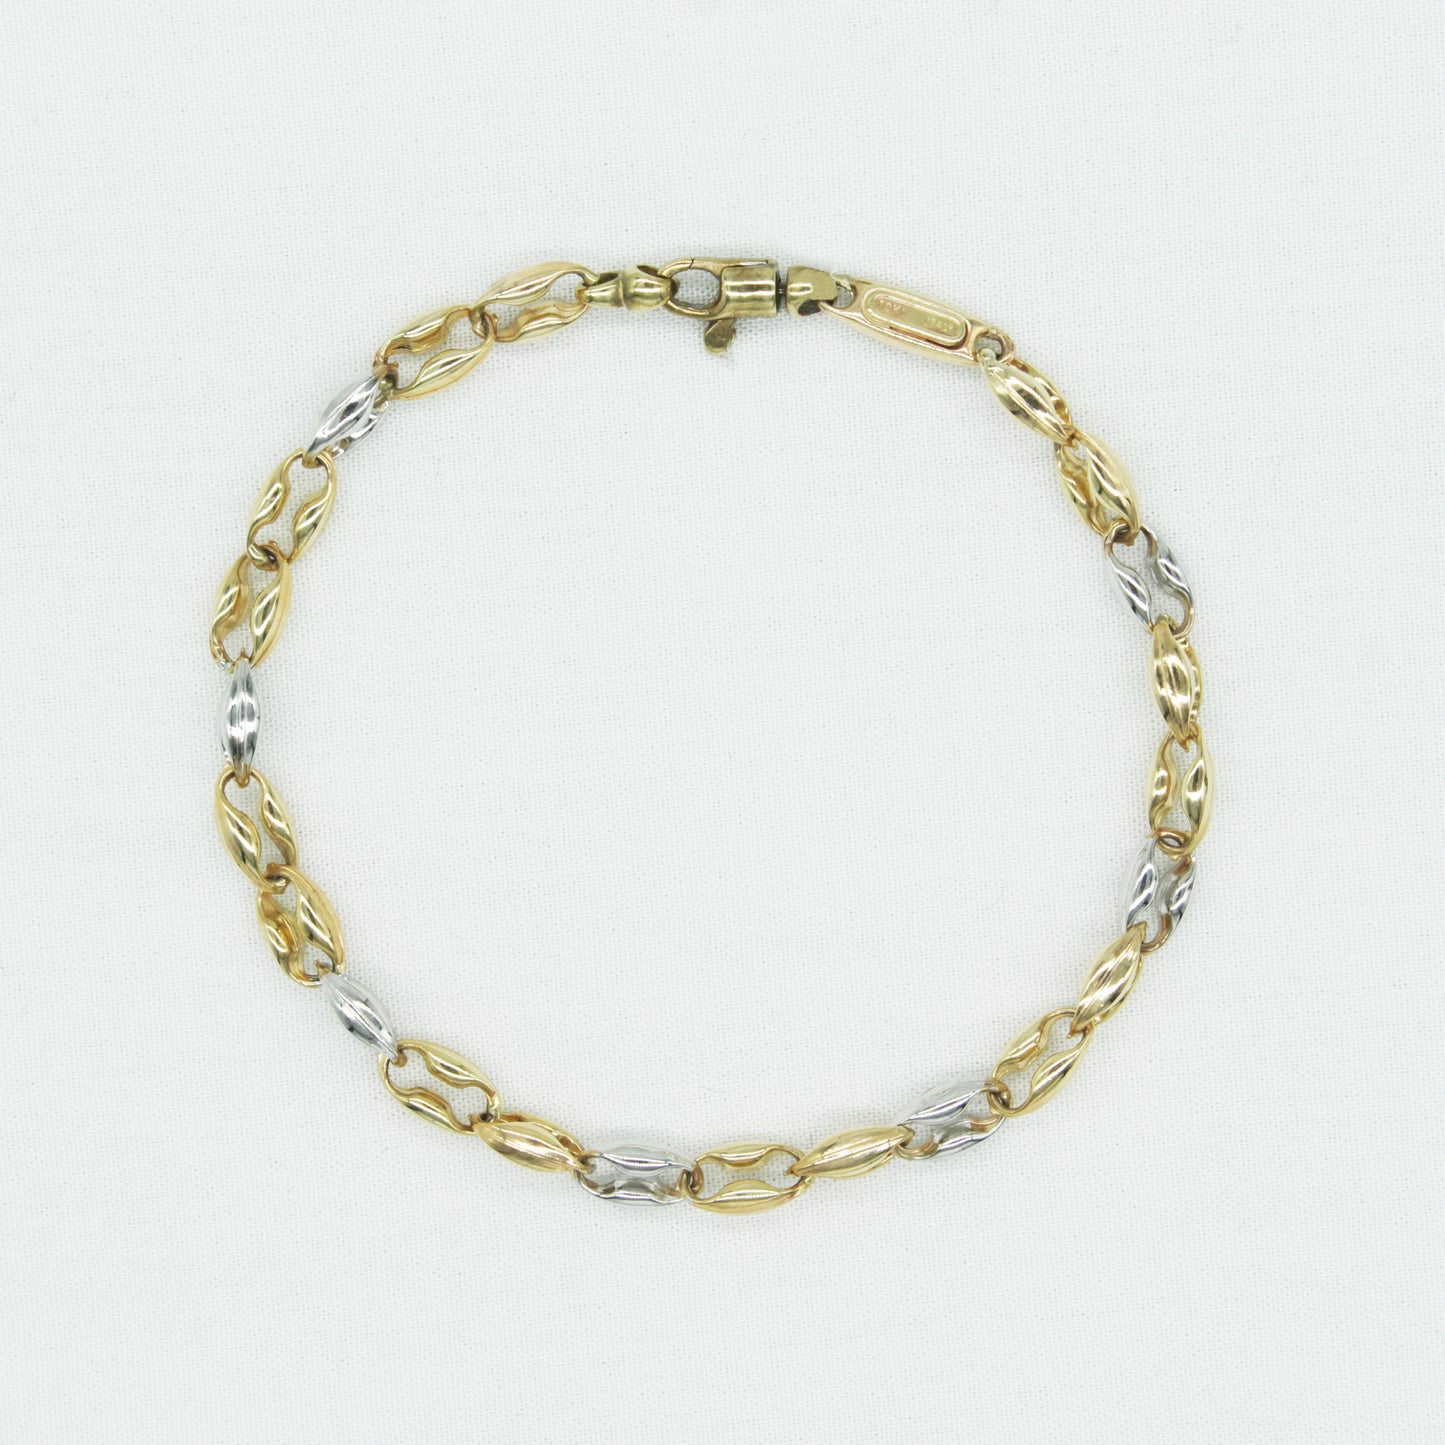 Vintage Gucci Link Bracelet in 10K (5.1mm x 5.1mm)